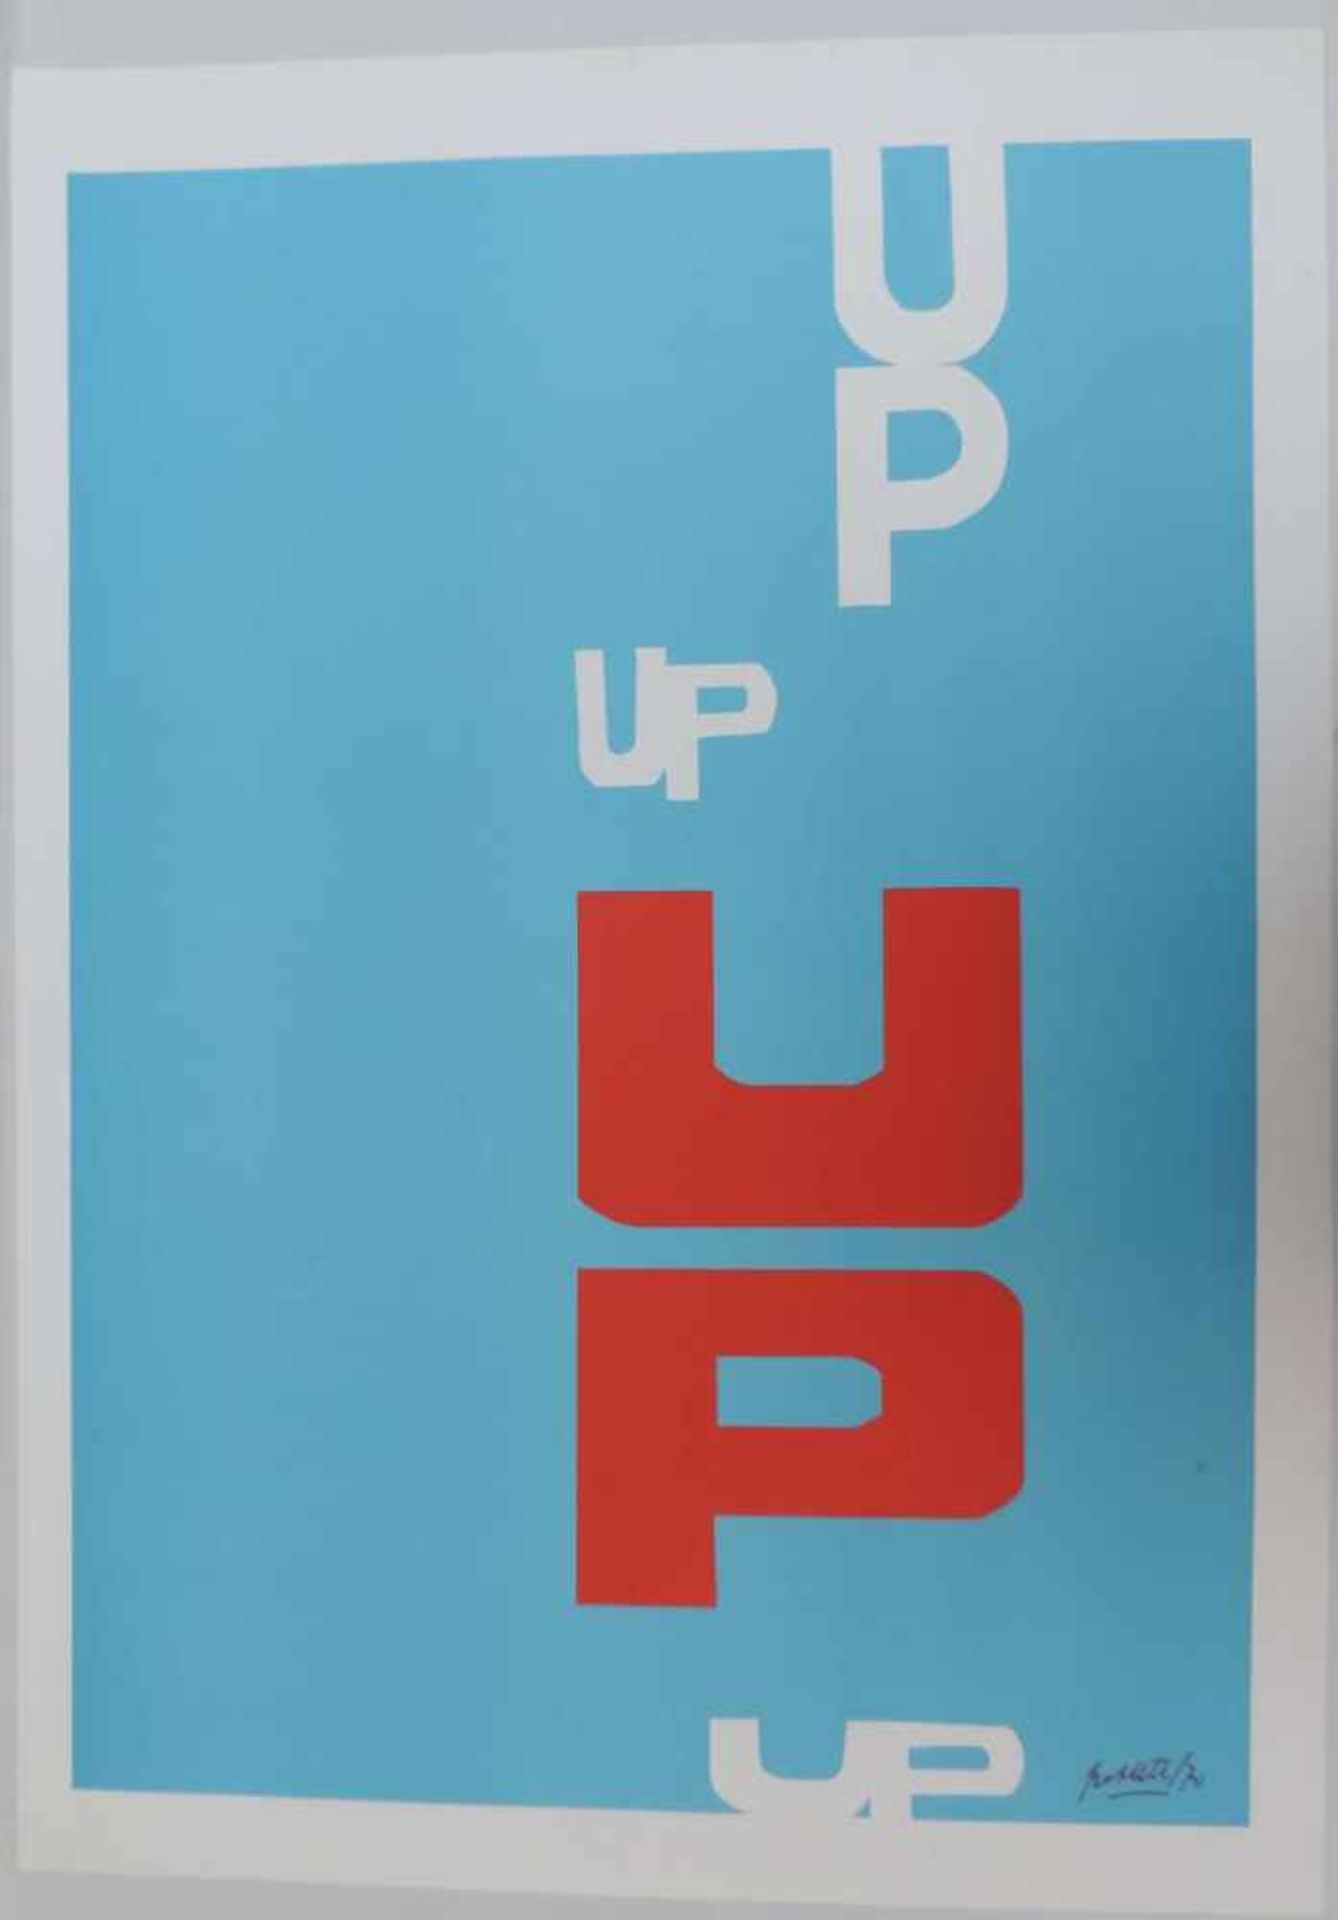 ANONYMUS/MA, Farbserigrafie, "Up", Schrift auf blauem Grund, unentschlüsselt sign u dat (19)70, 74 x